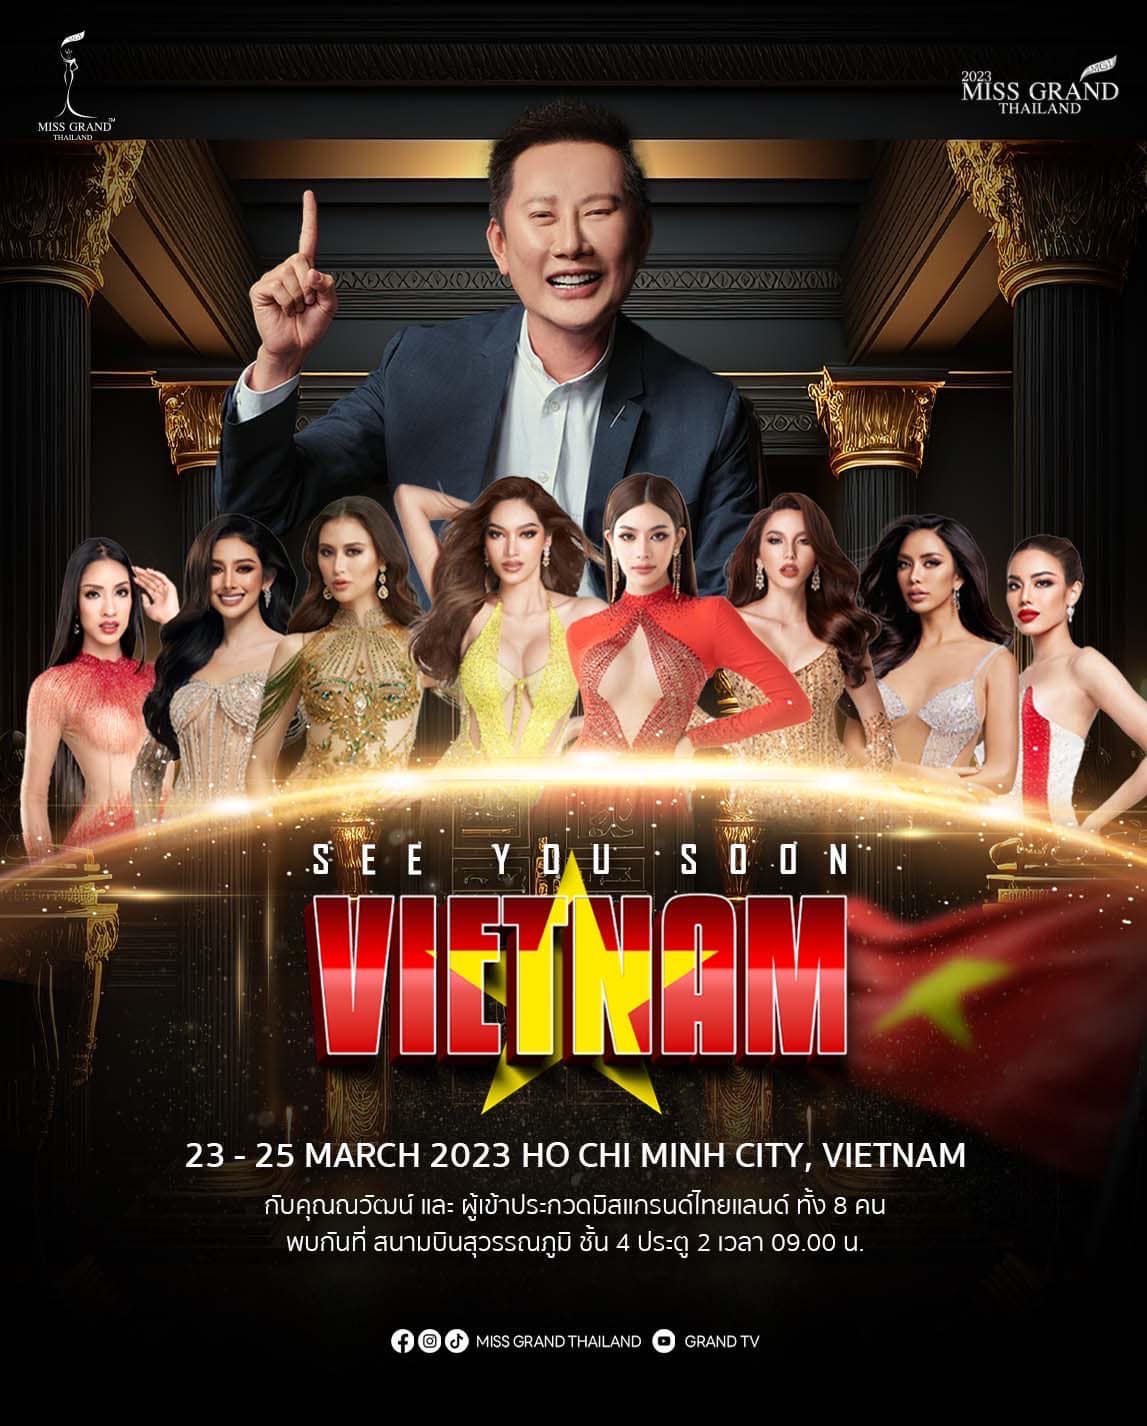 Gạt bỏ ồn ào, chủ tịch Miss Grand International thông báo đến Việt Nam - ảnh 1